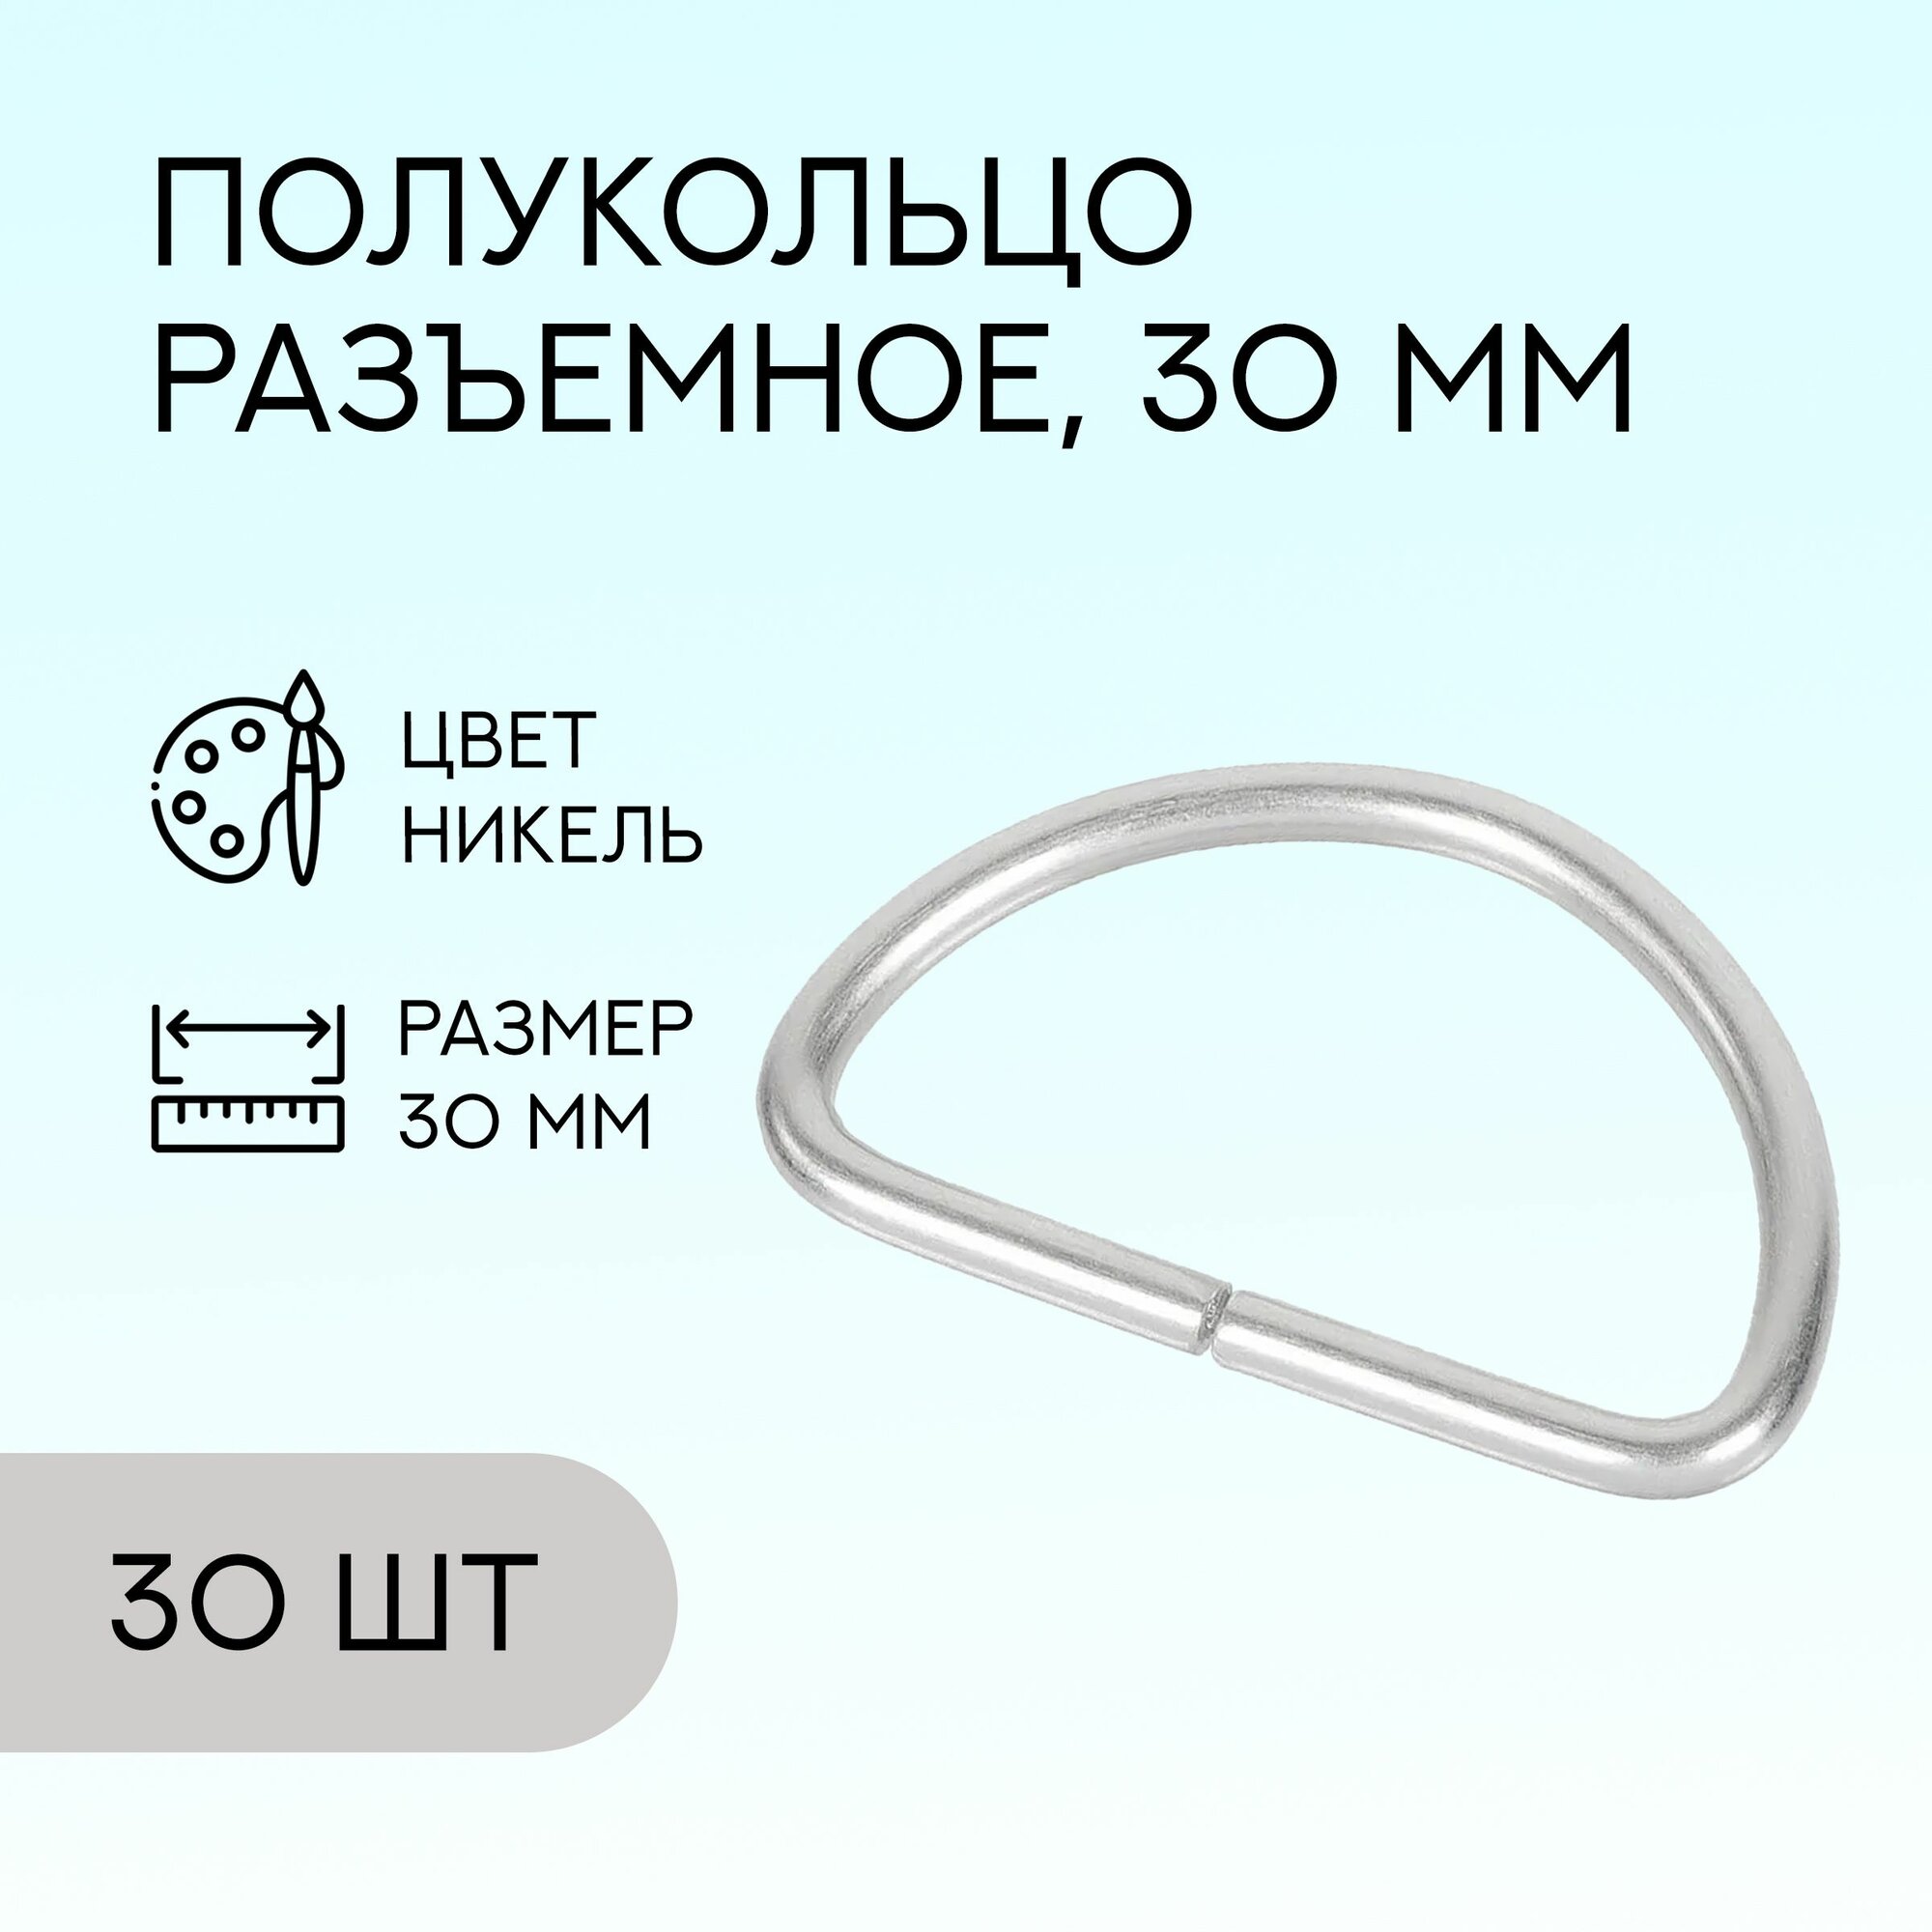 Полукольцо разъемное, 30 мм, никель, 30 шт. / кольцо для сумок и рукоделия / FG-149107_30